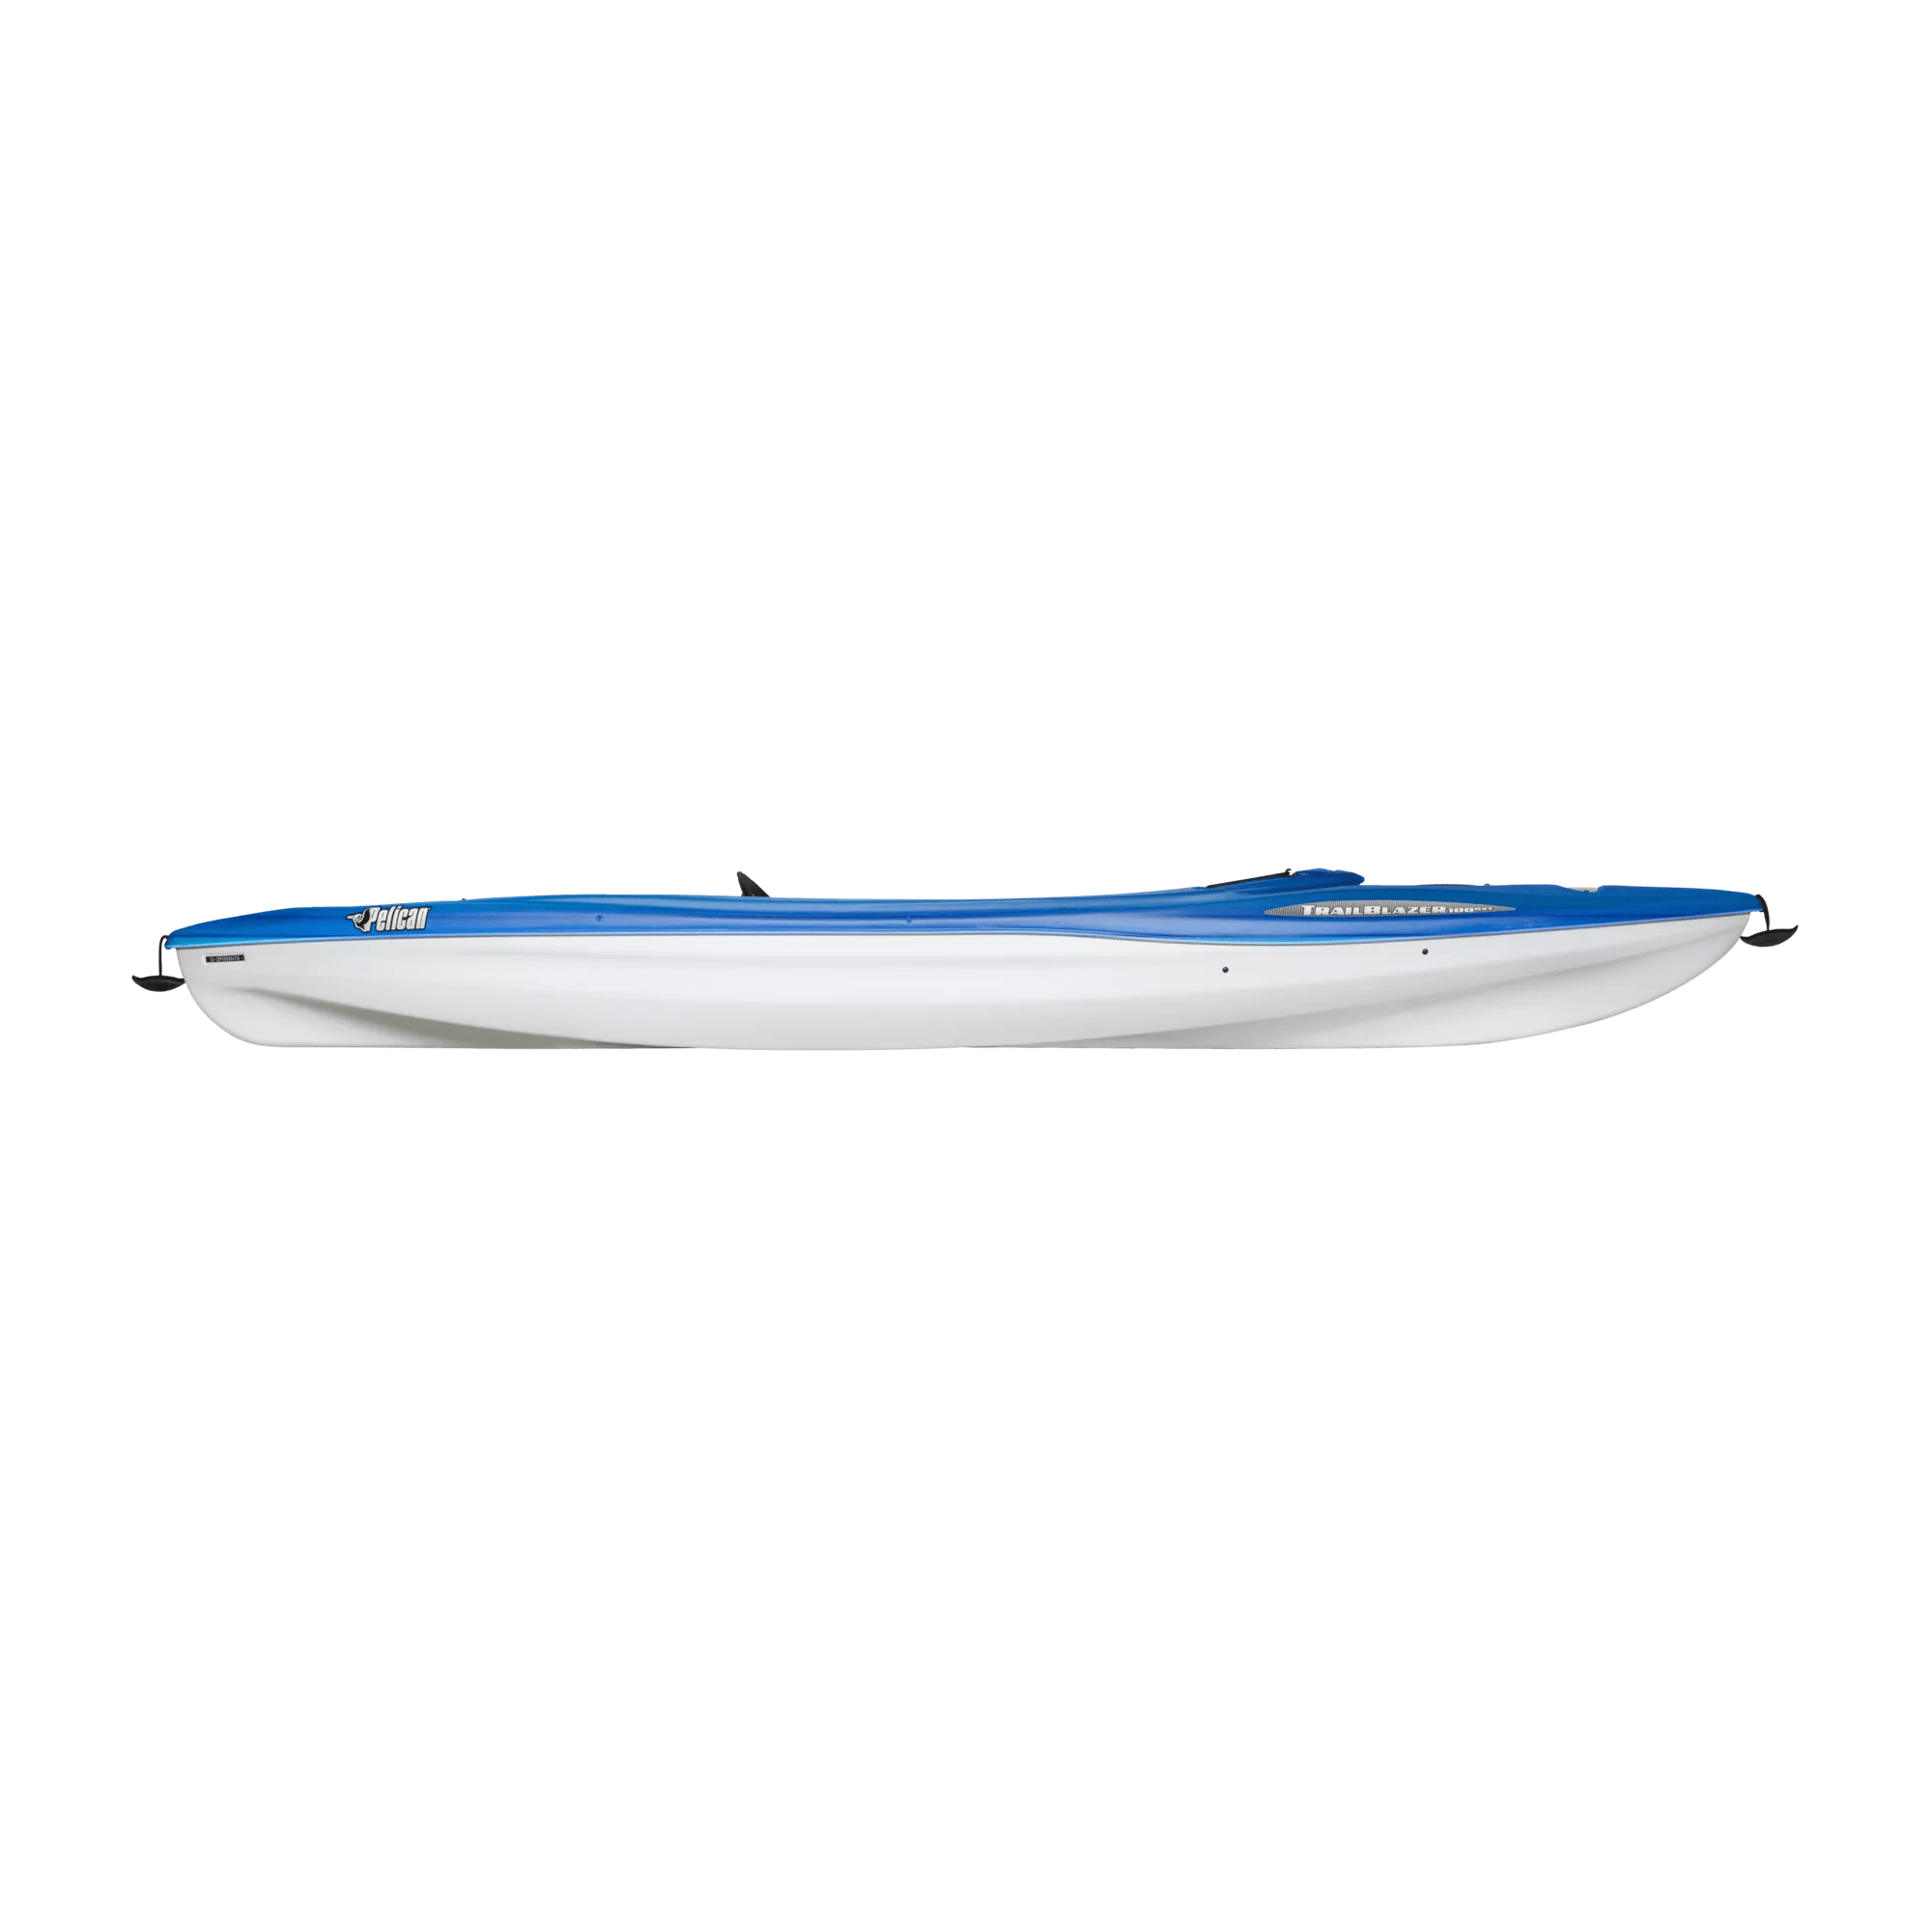 PELICAN - Trailblazer 100 NXT Recreational Kayak - Dark blue - KSF10P300 - SIDE